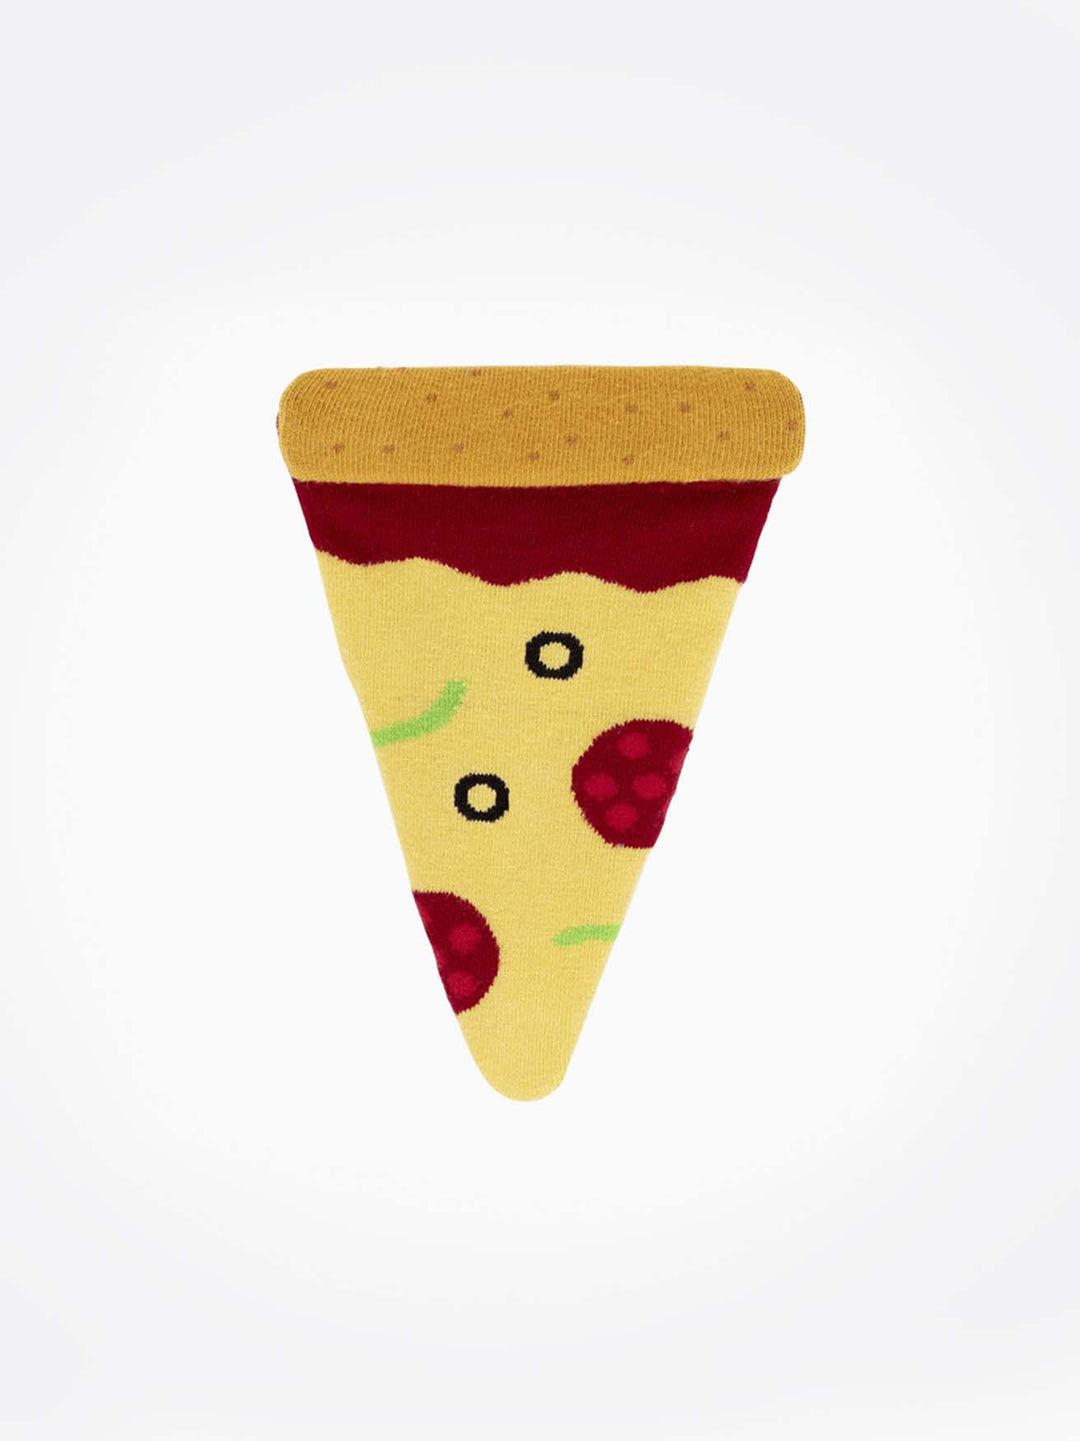 Napoli Pizza Slice Socks - #Perch#